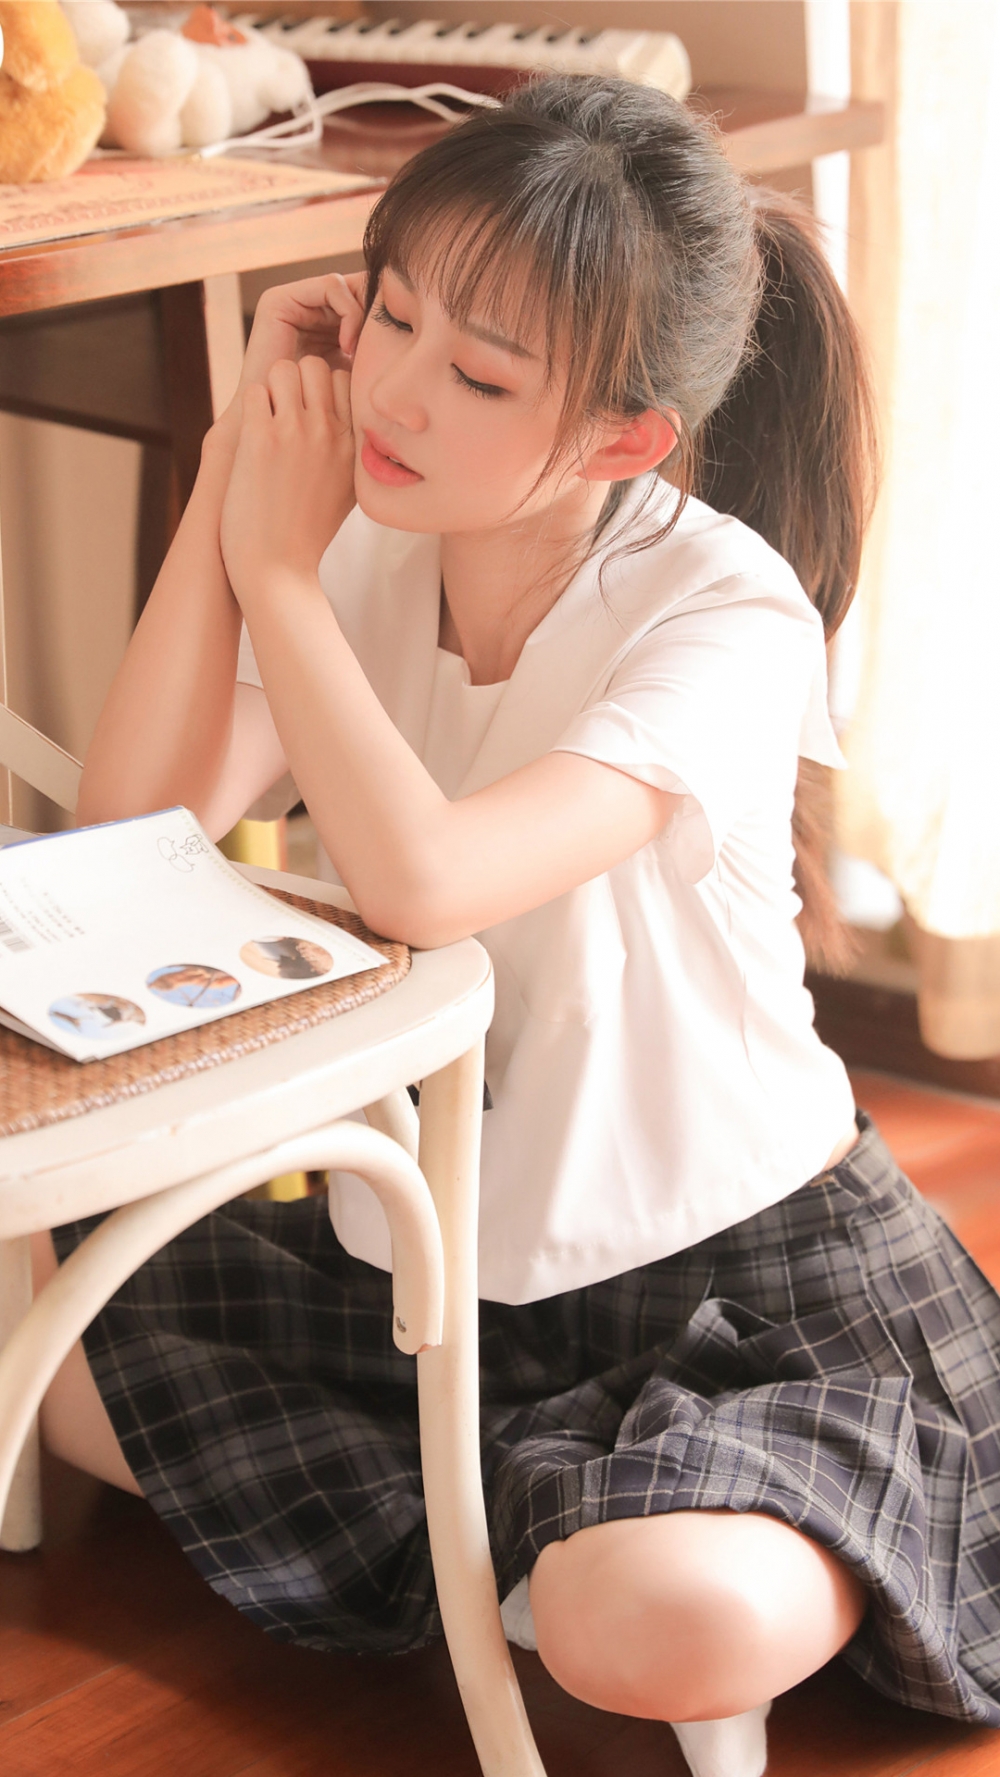 高马尾美少女学生制服甜美迷人居家写真